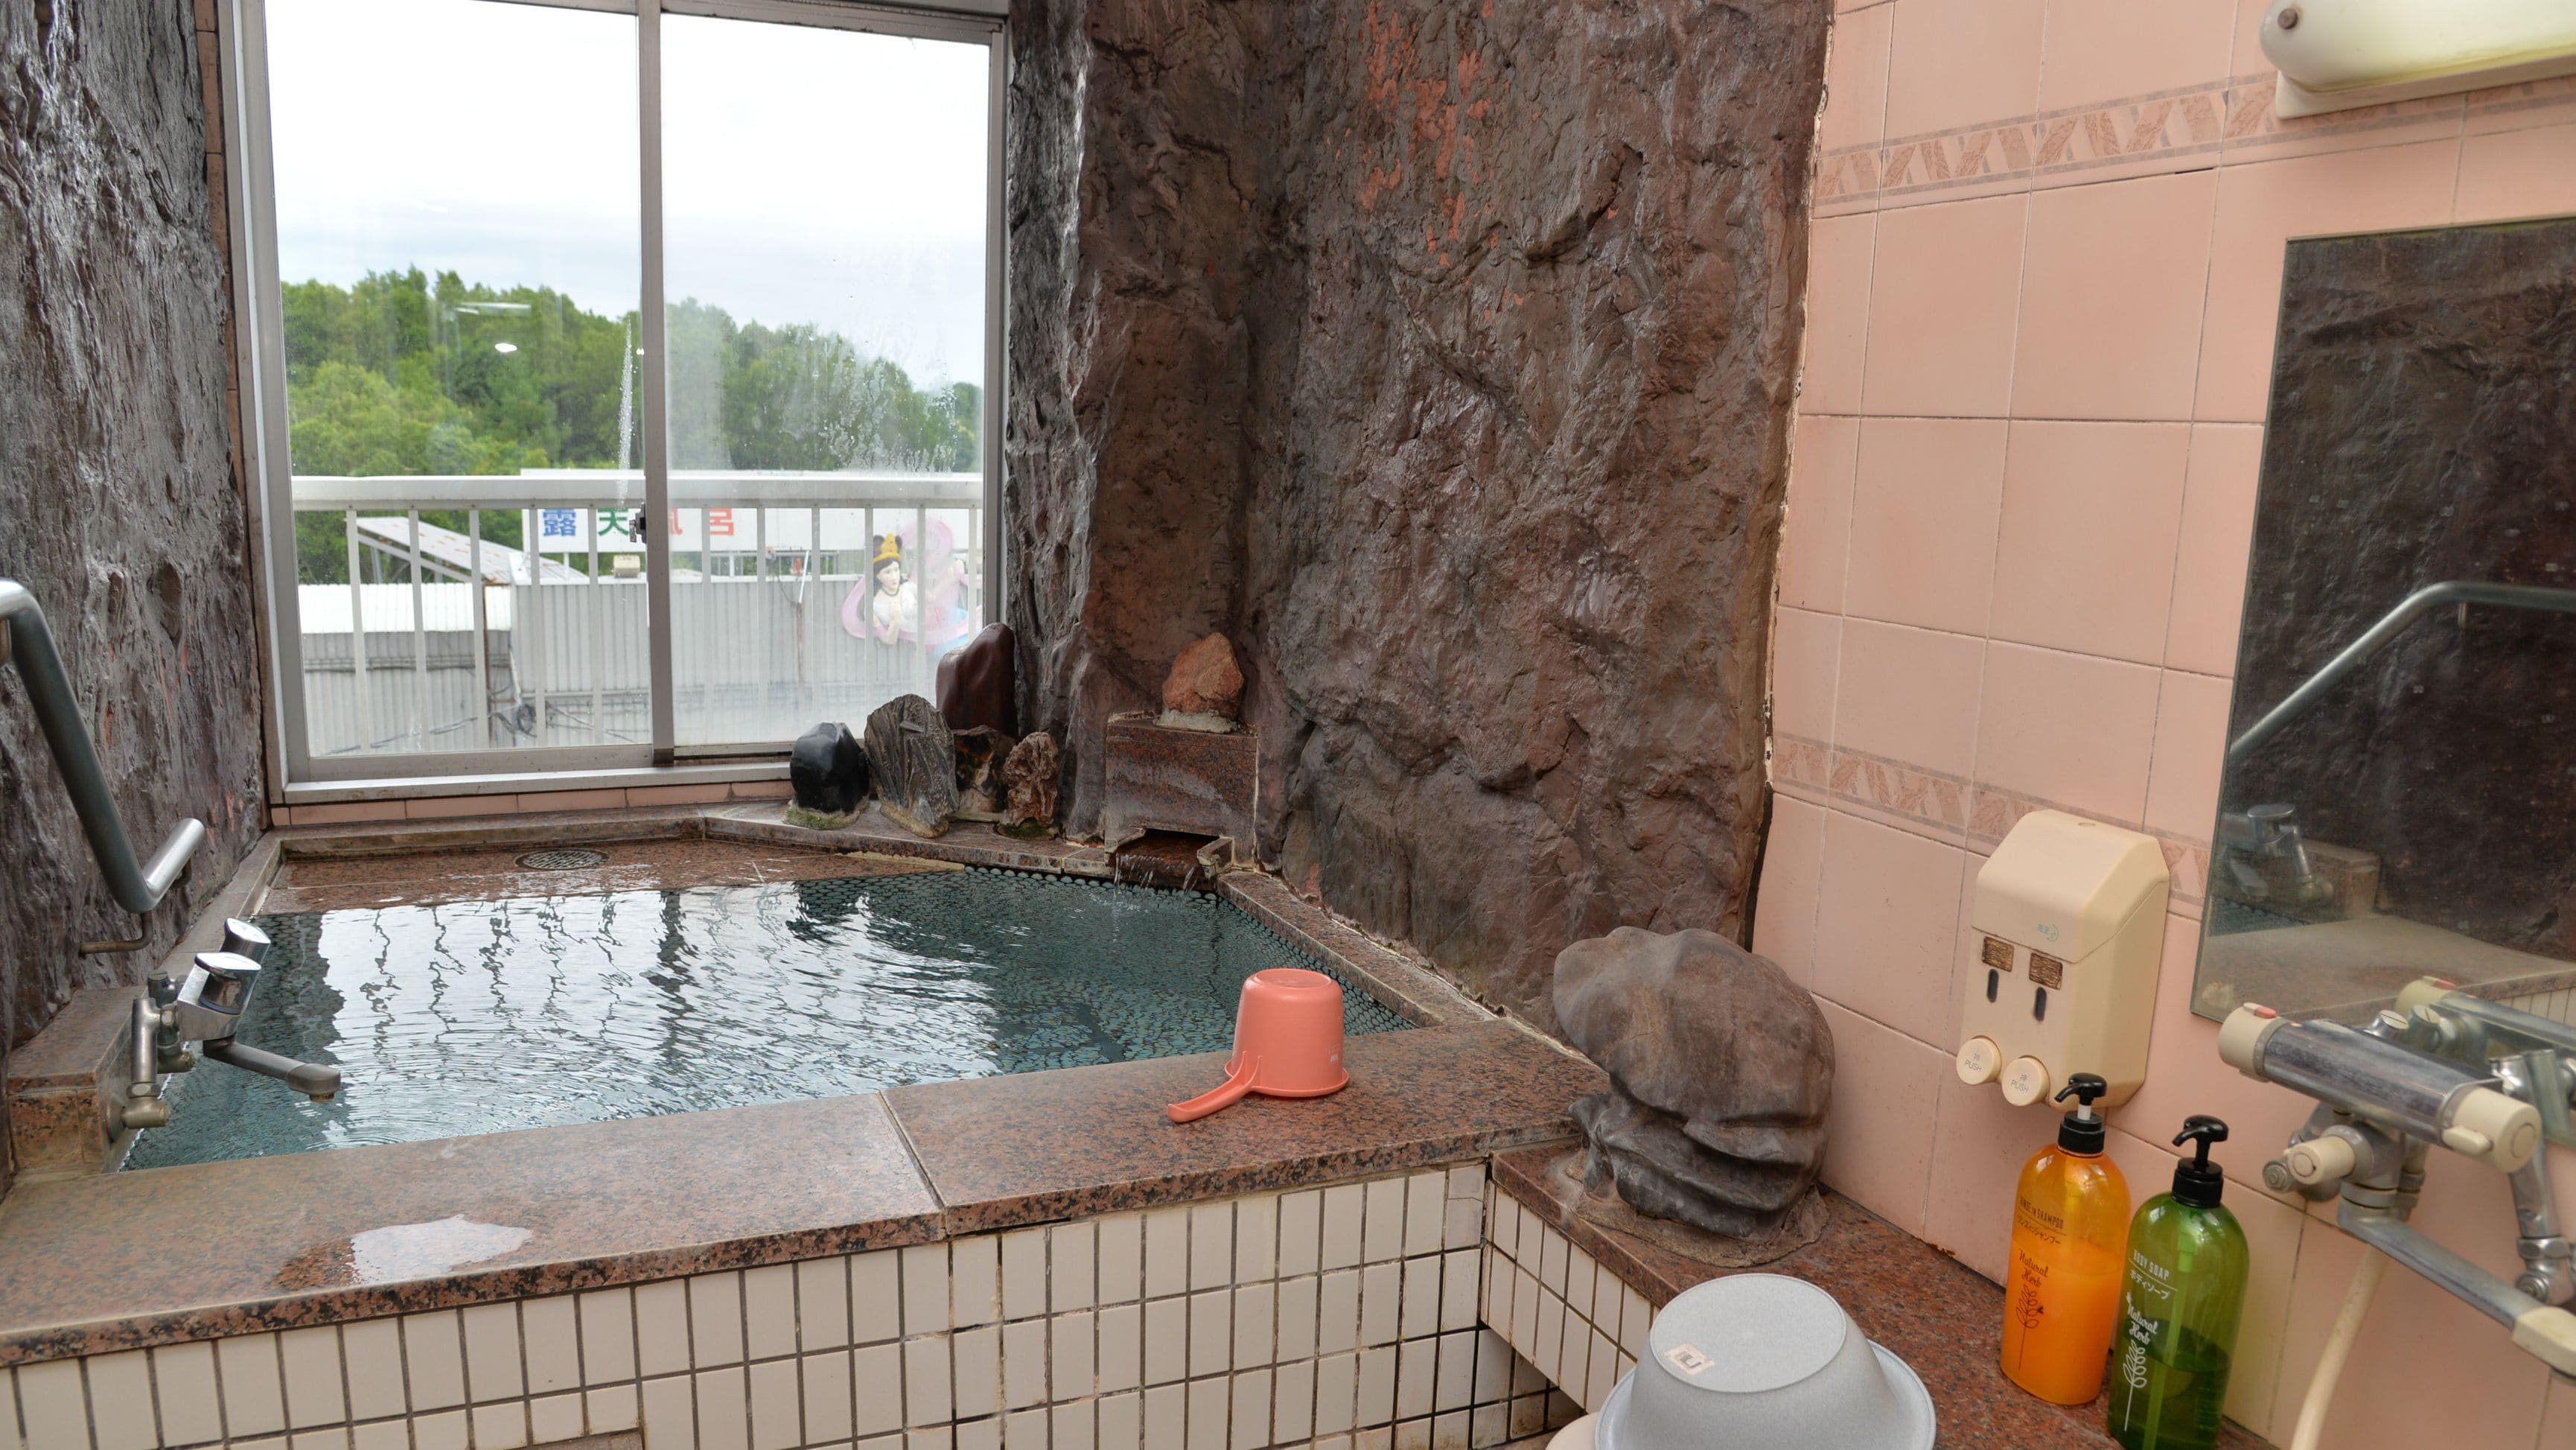 ◆ ห้องสไตล์ญี่ปุ่นพร้อมอ่างหิน มุมมองที่ดีที่สุดจากอ่างอาบน้ำ อ่างหินเป็นบ่อน้ำพุร้อนธรรมชาติ